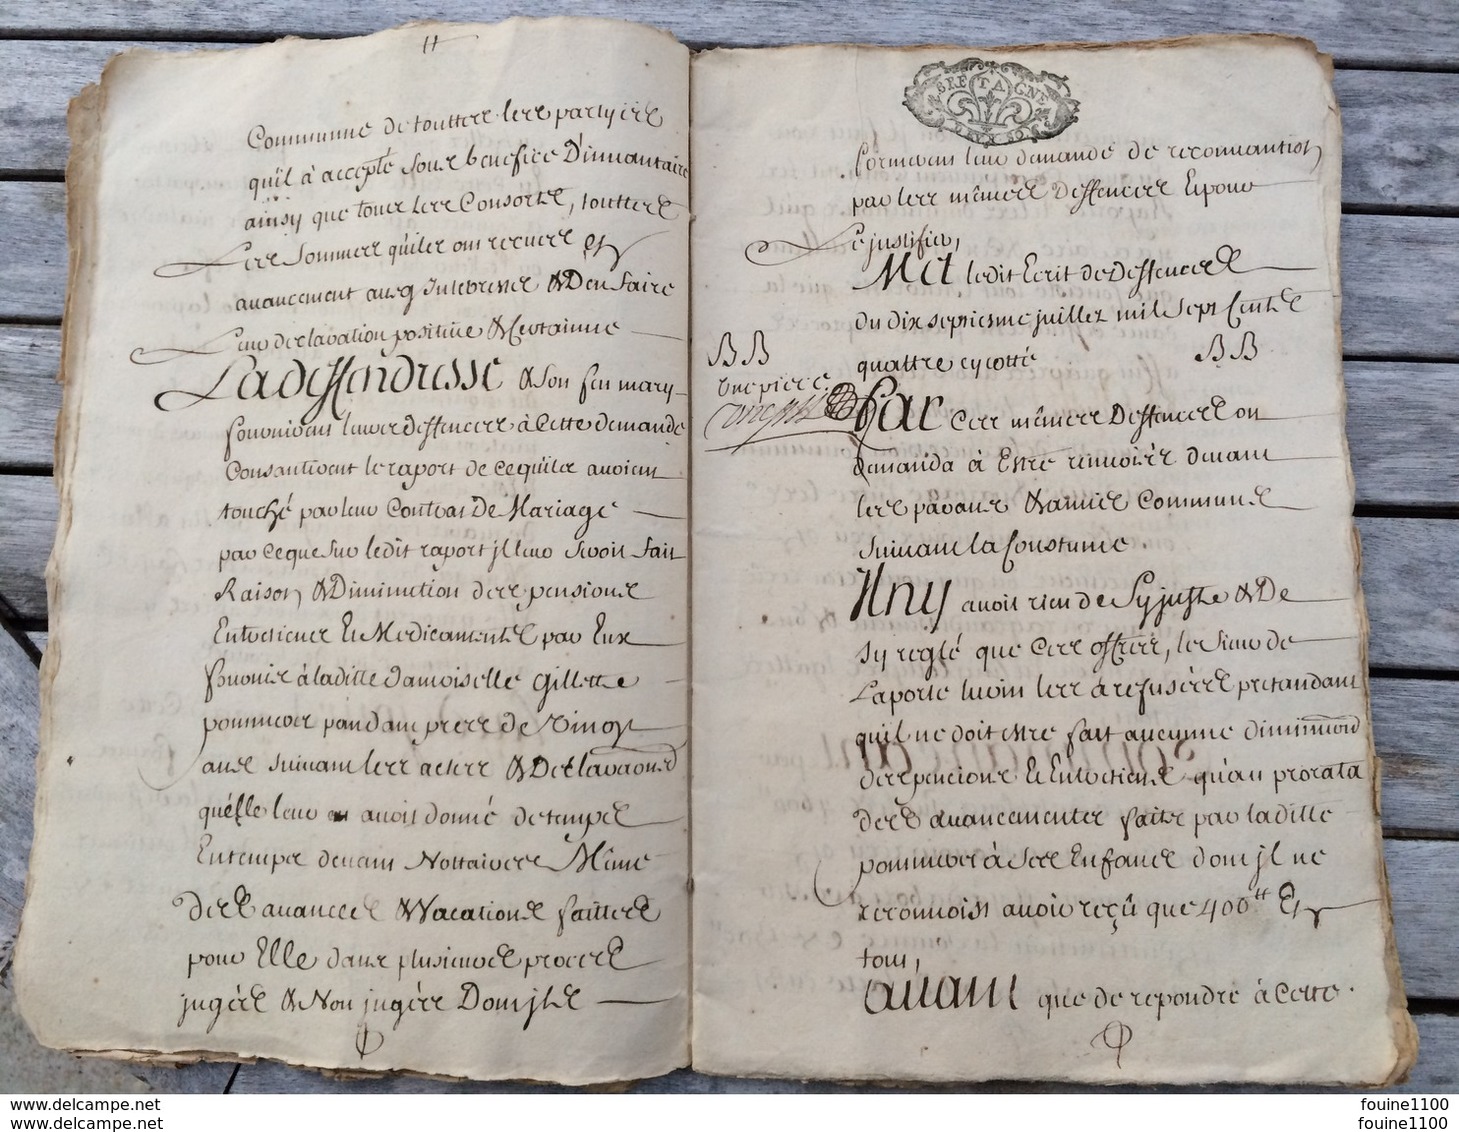 grand cahier année 1707 BRETAGNE pour dame janne turin guillaume de trolong de villeroy  à identifier à traduire